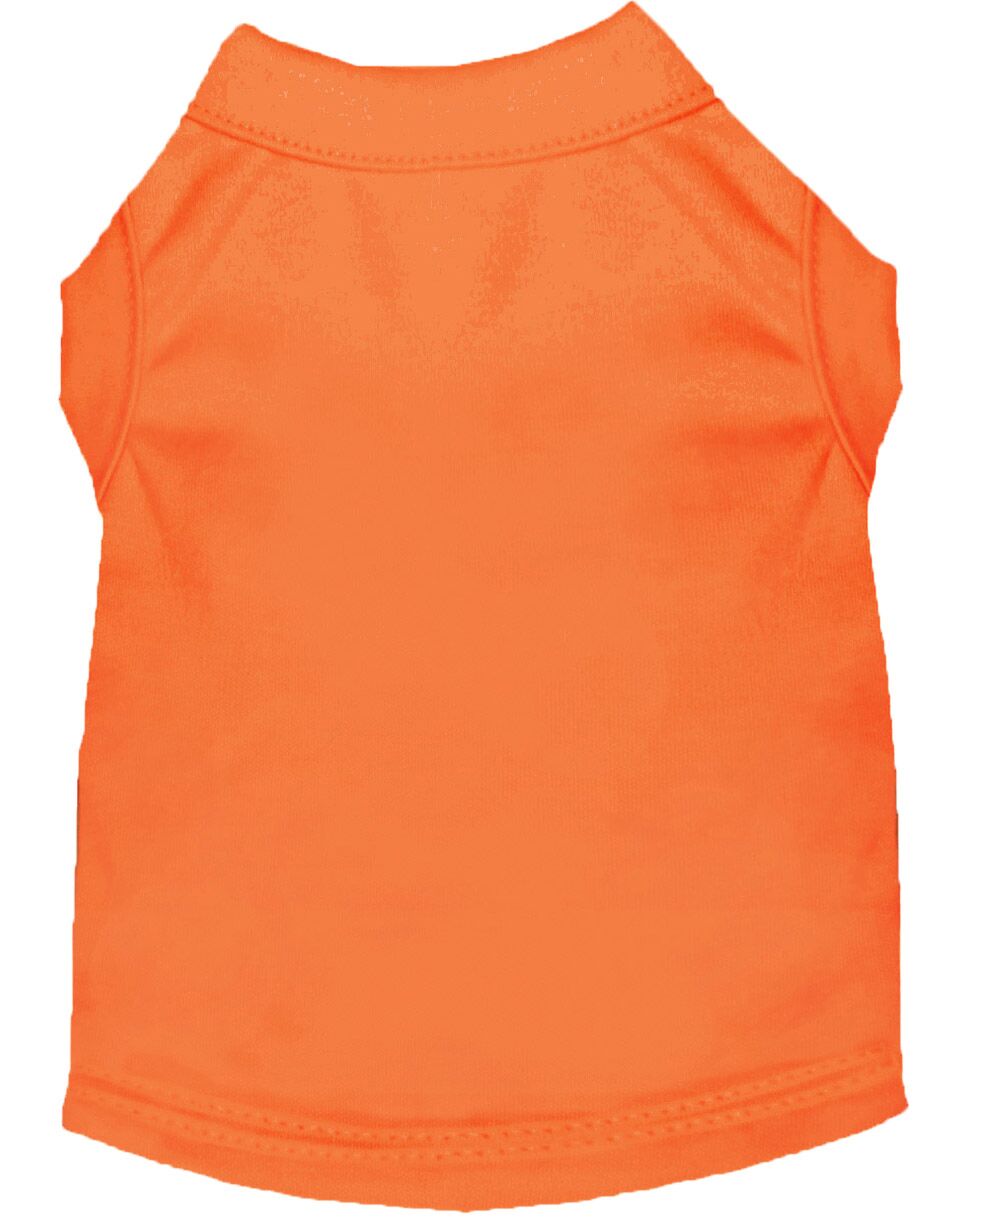 Embroidery Orange Dog Shirt